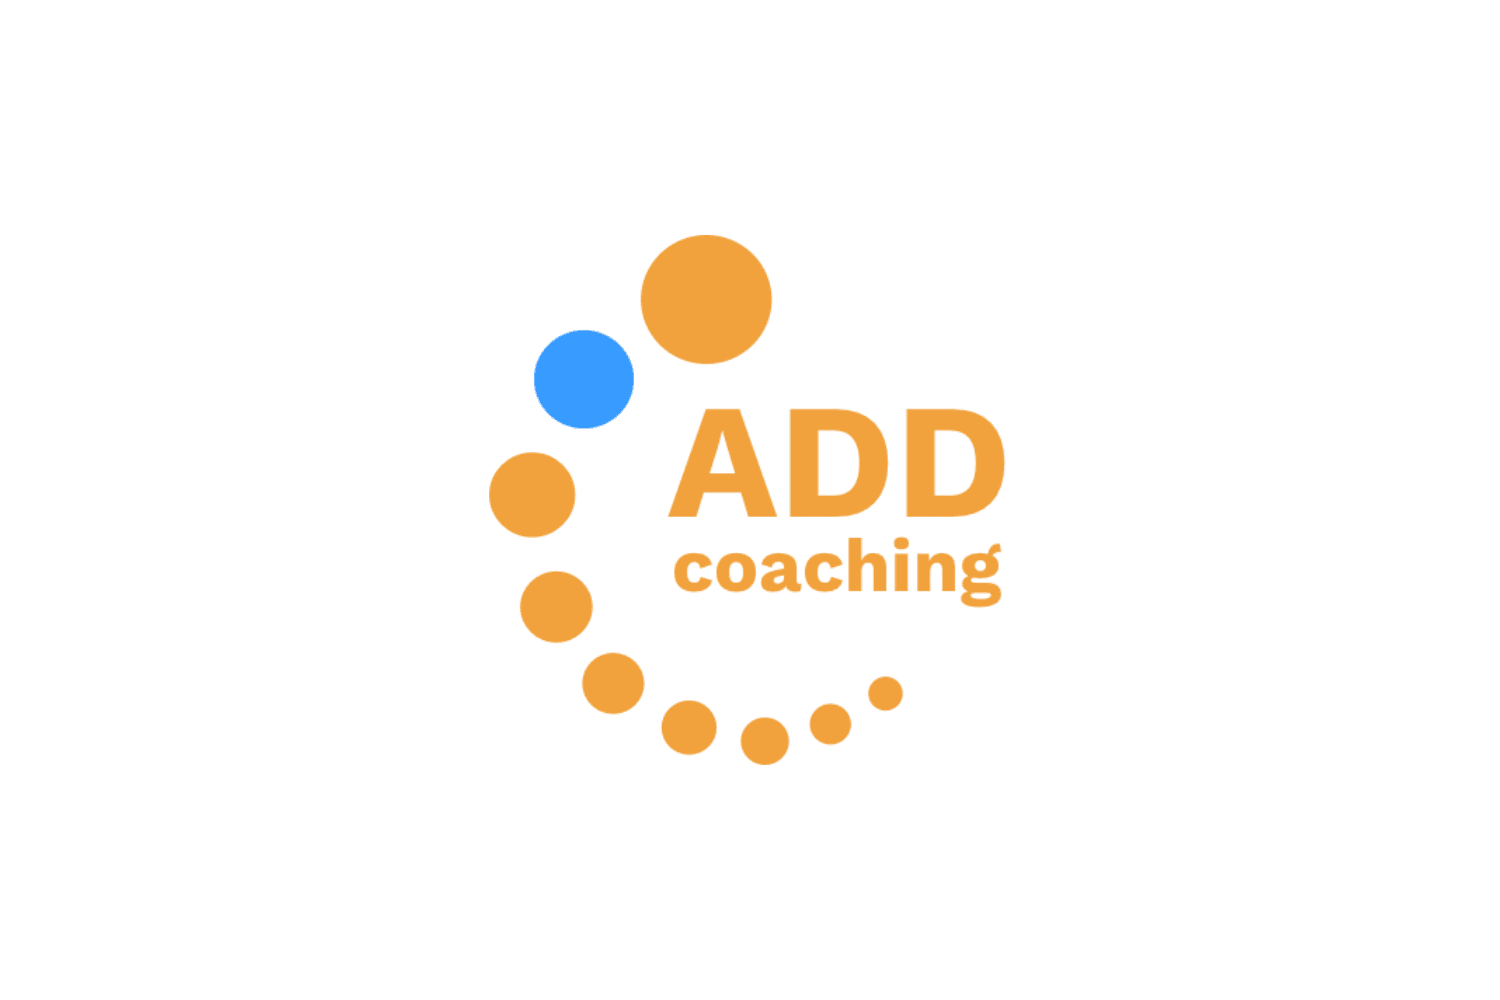 Logo ADD Coaching